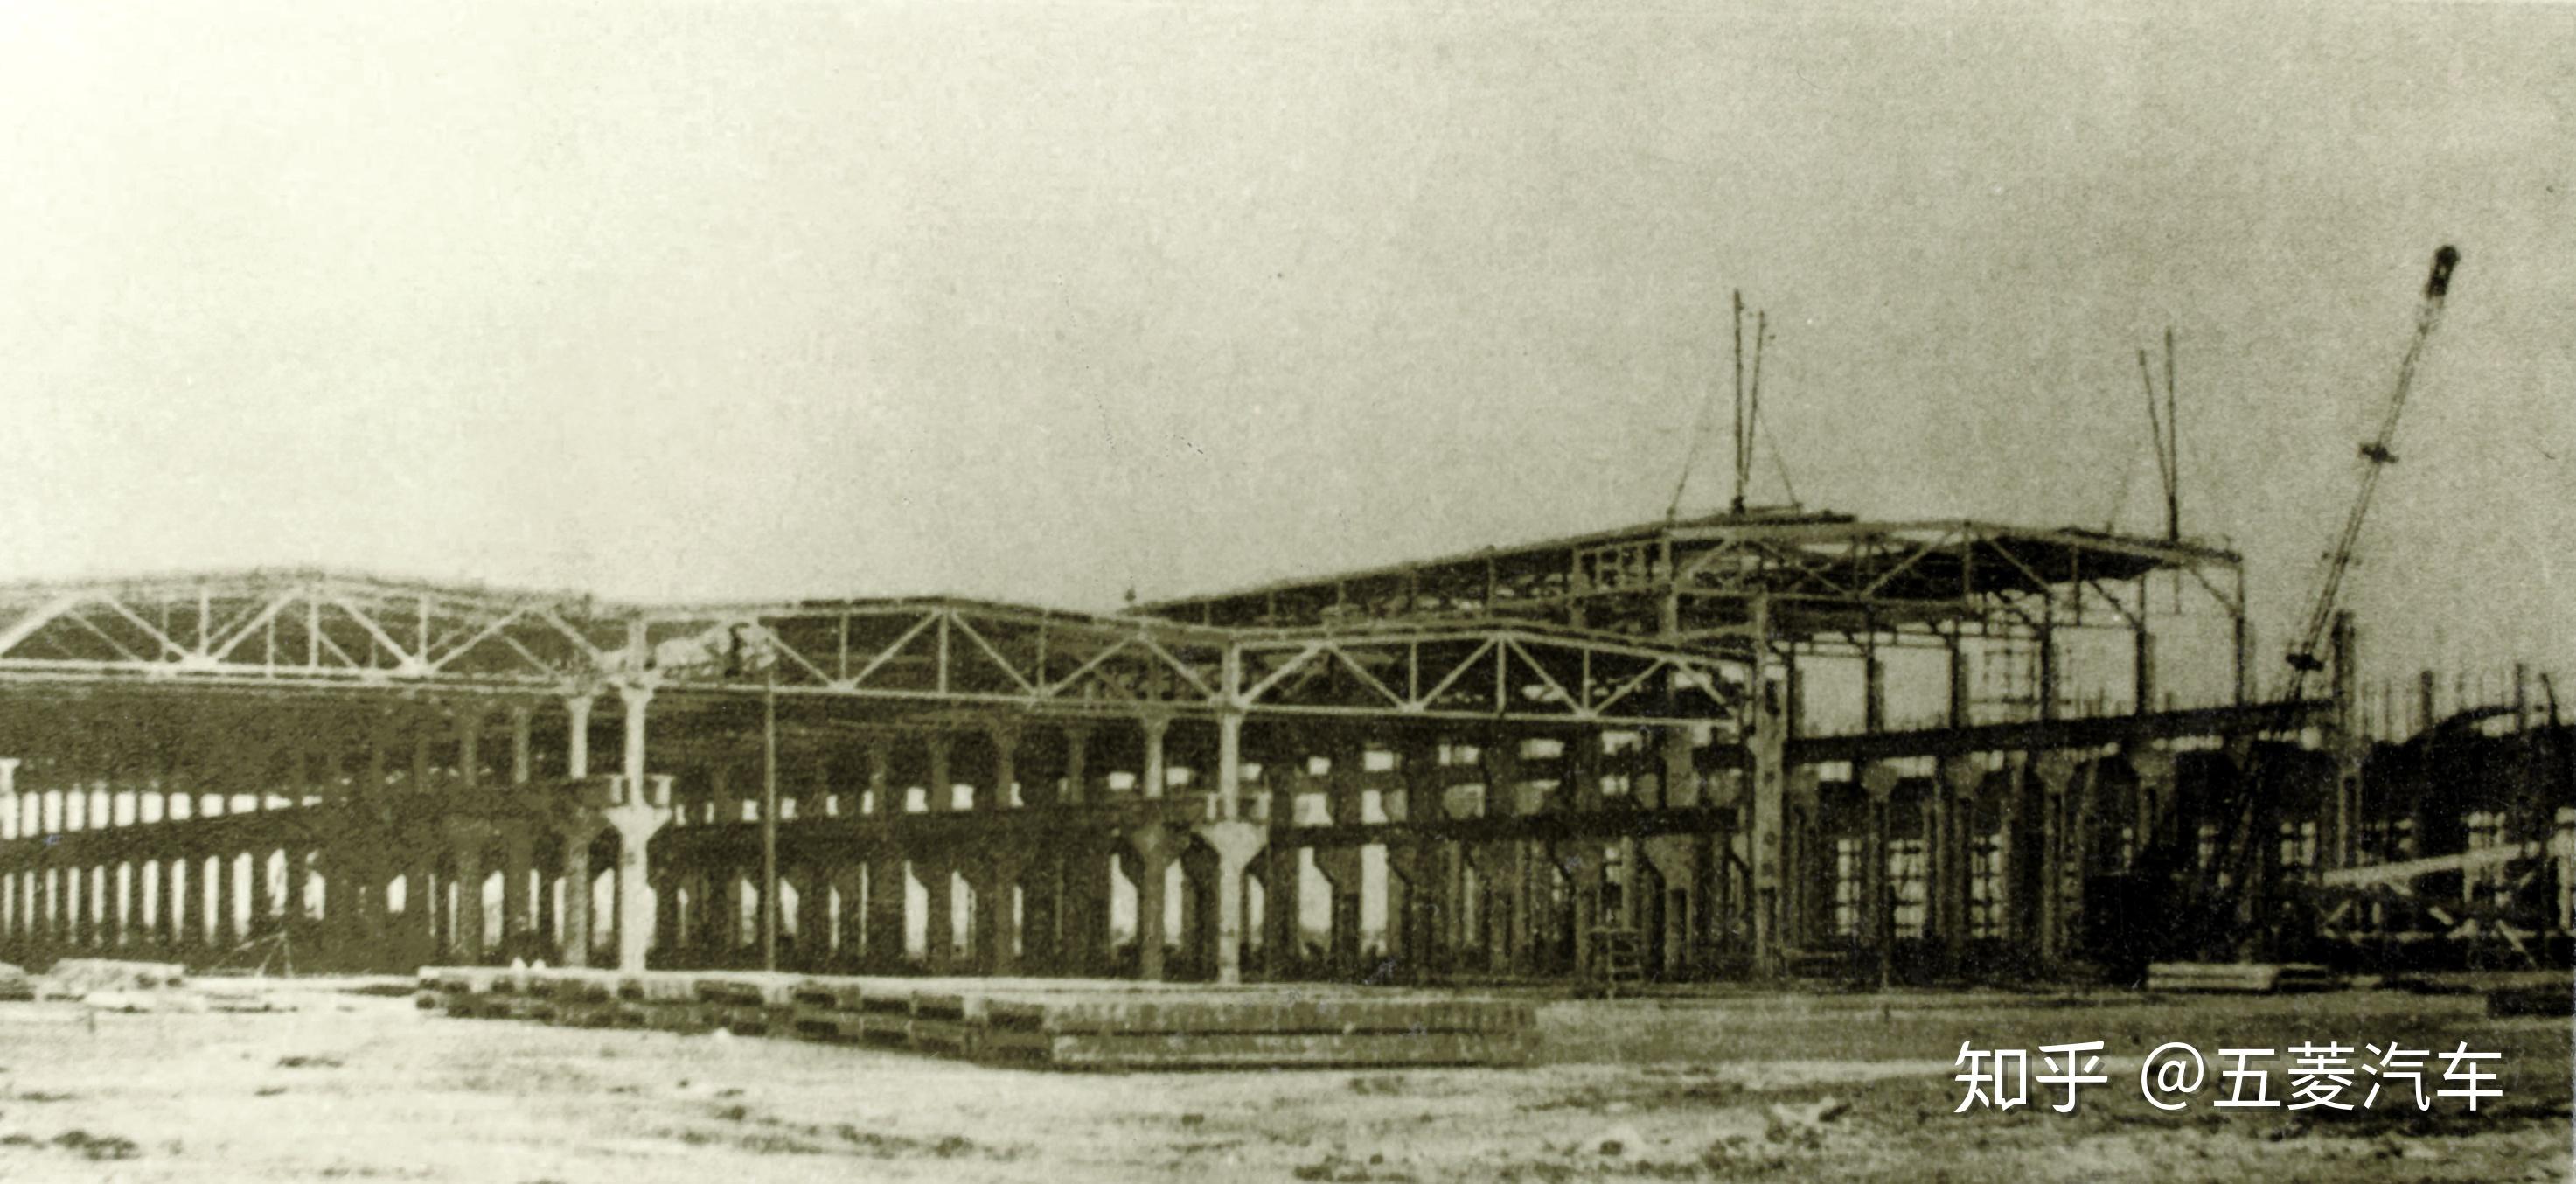 1928年,桂系领袖李宗仁在这里修建了一家柳州机械厂,开始组装飞机